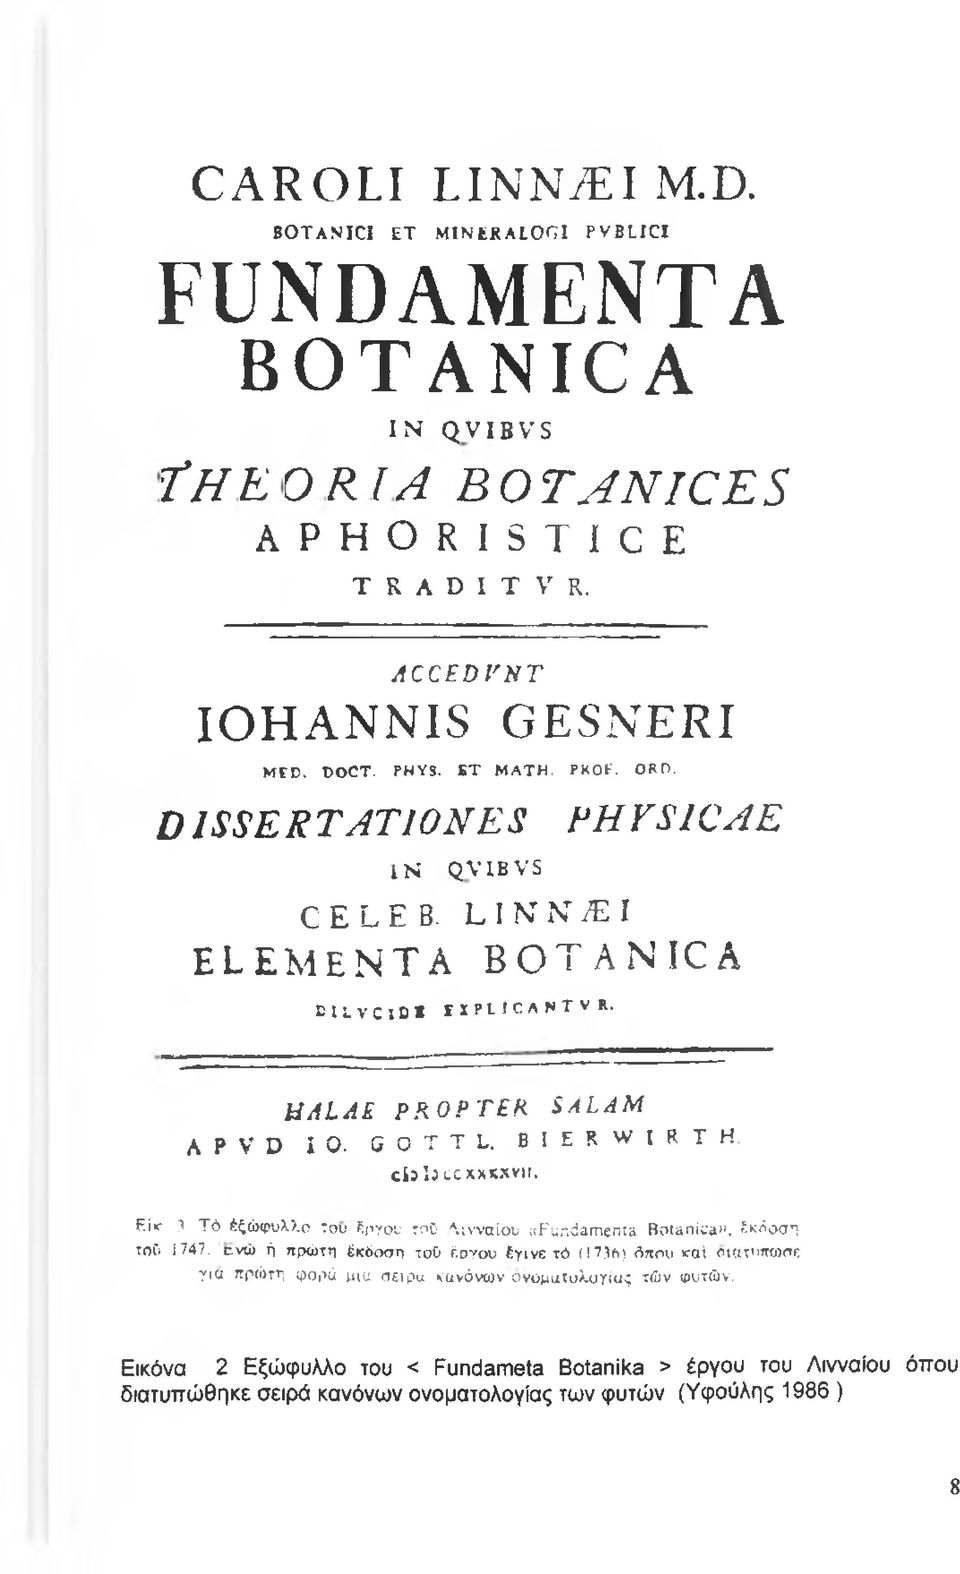 kl A LAE PROPTER S ALA Μ A P V D IO - GOTTL. BIERWIRT H. c i a l i c c x x k x v ü. Eite 3. Tò έξώφυλλ.ο του έργου τοδ Αινναίου «Fundamenta Botanica», έκδοση τού 1747.